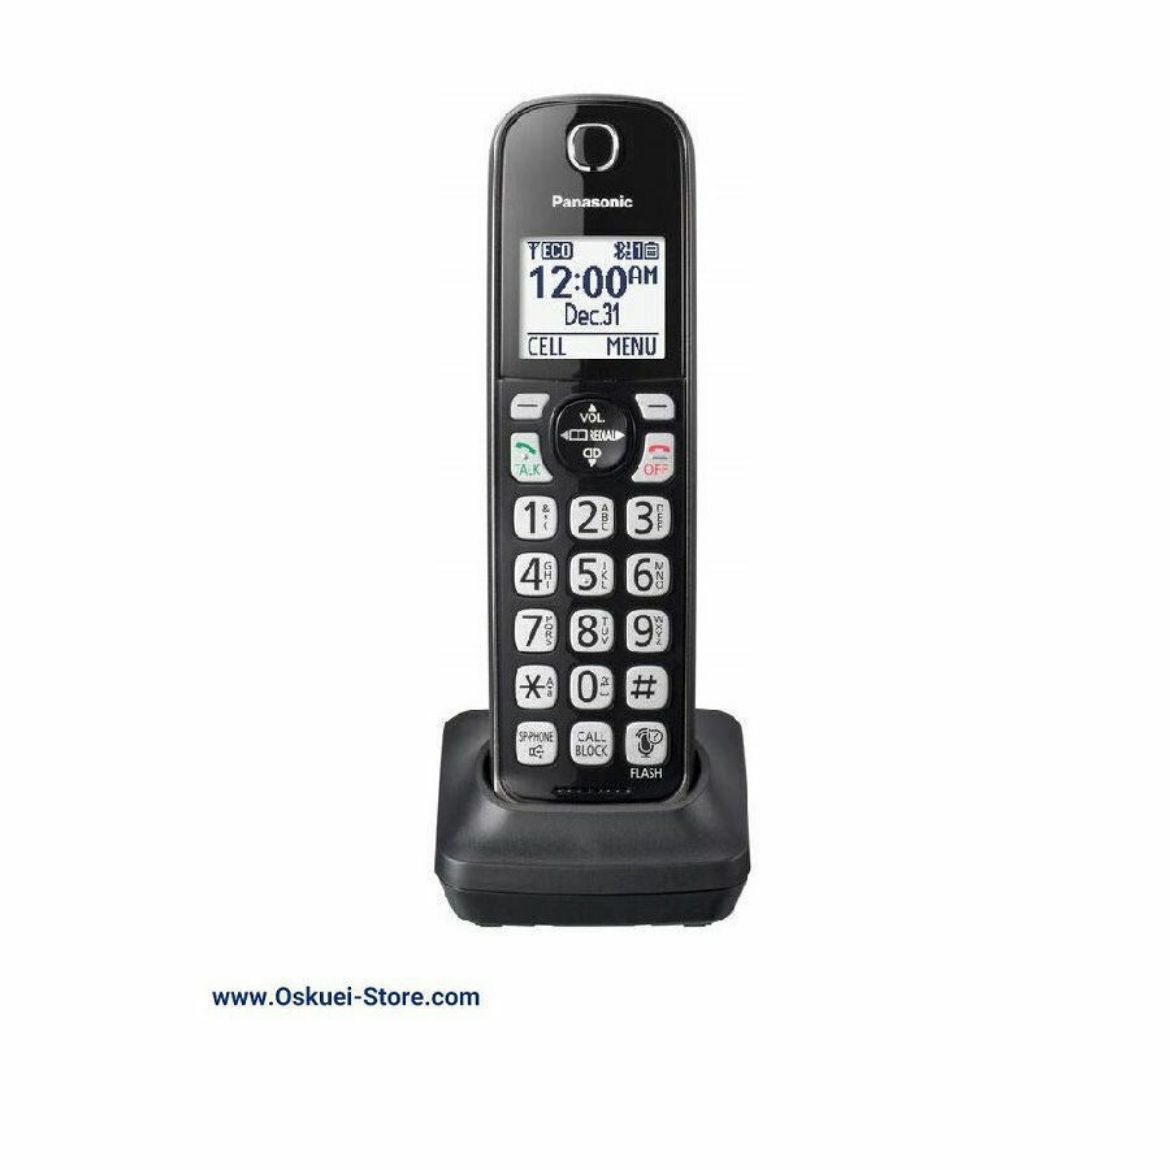 Panasonic KX-TGDA51 Cordless Telephone Black With Base